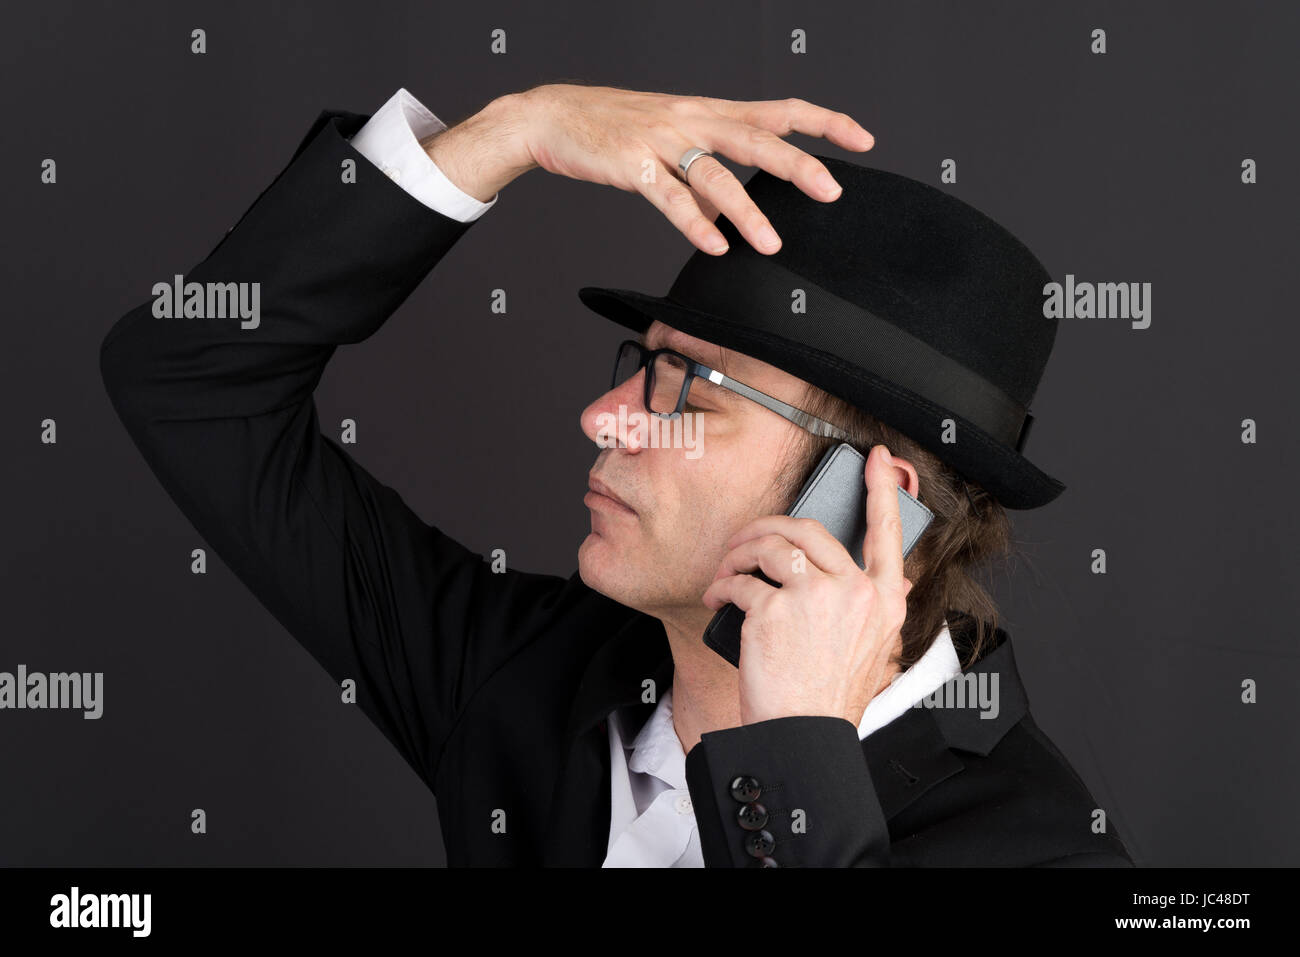 Portrait d'un homme d'âge moyen en tailleur et hat effectuer un appel téléphonique - studio shot sur fond sombre Banque D'Images